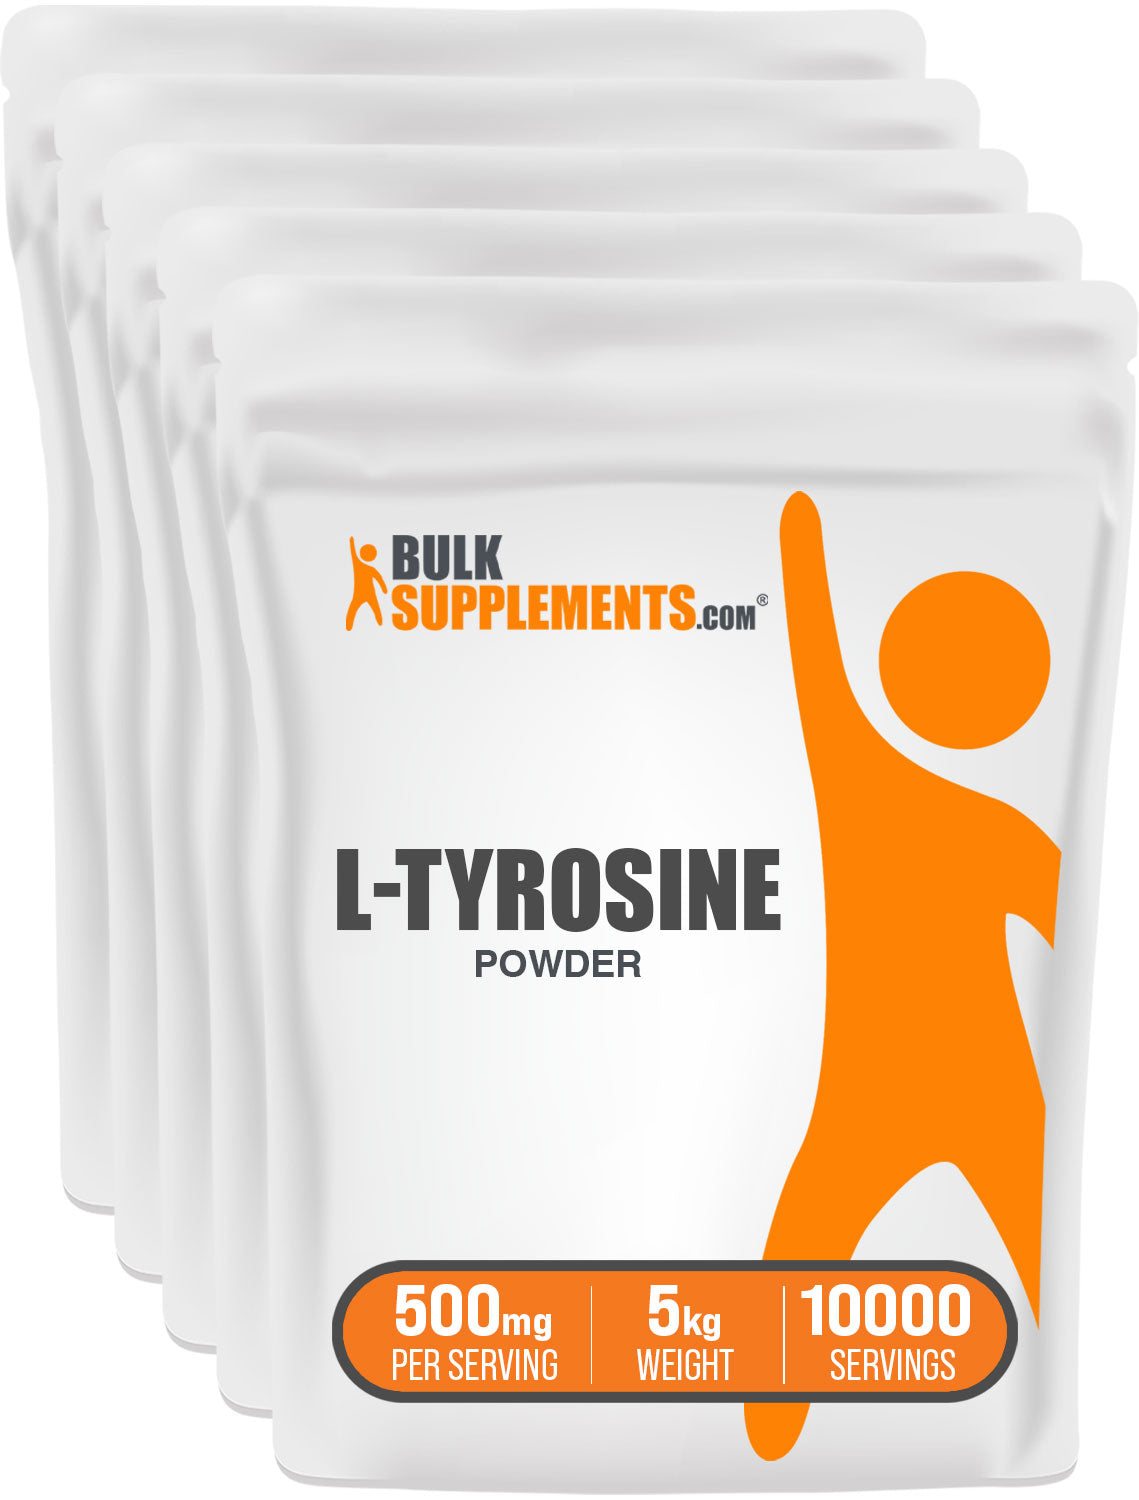 L-Tyrosine Powder 5kg bags